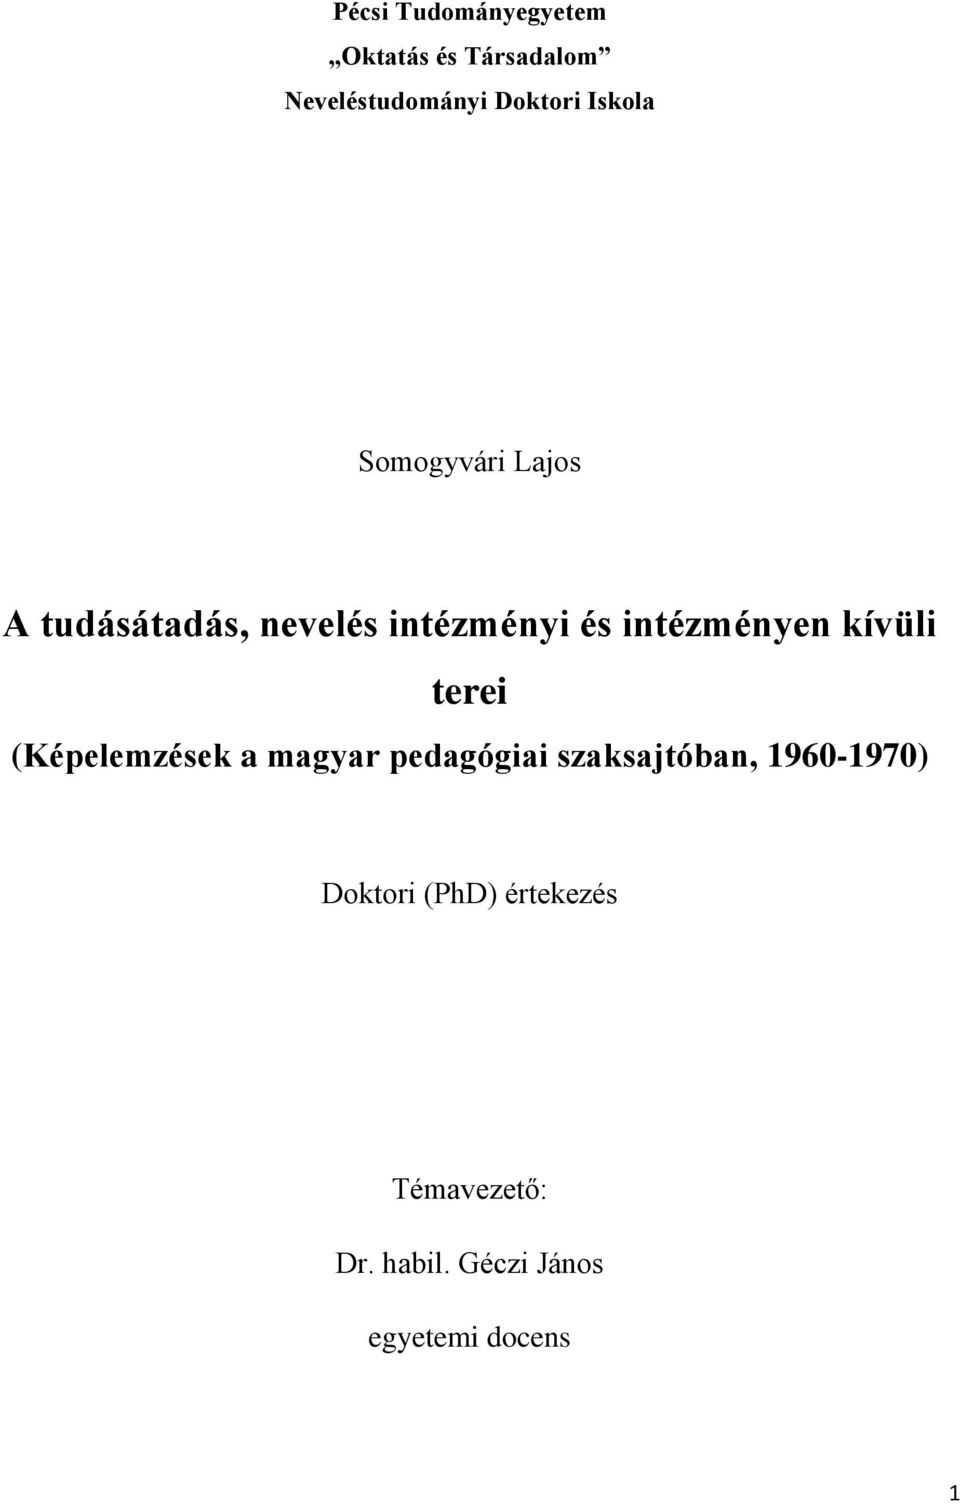 kívüli terei (Képelemzések a magyar pedagógiai szaksajtóban, 1960-1970)